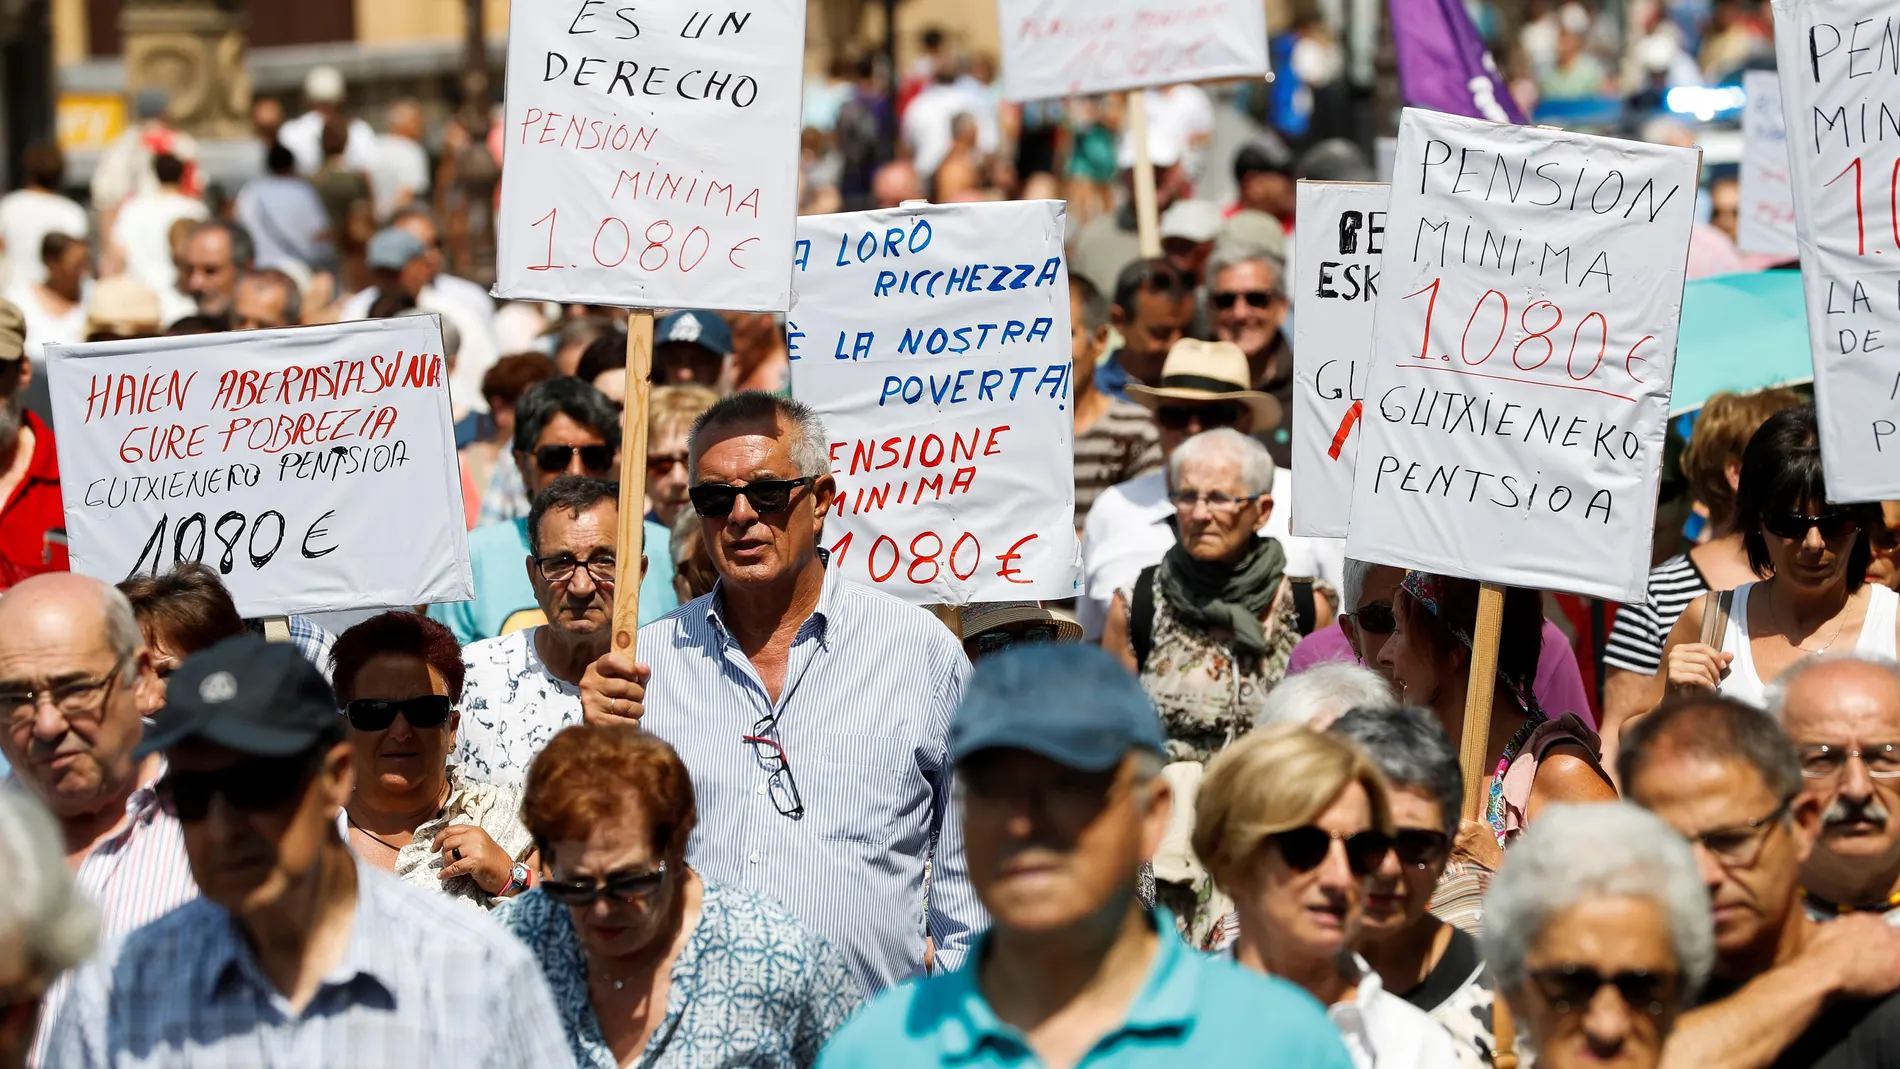 Las asociaciones de pensionistas en una concentración en San Sebastián